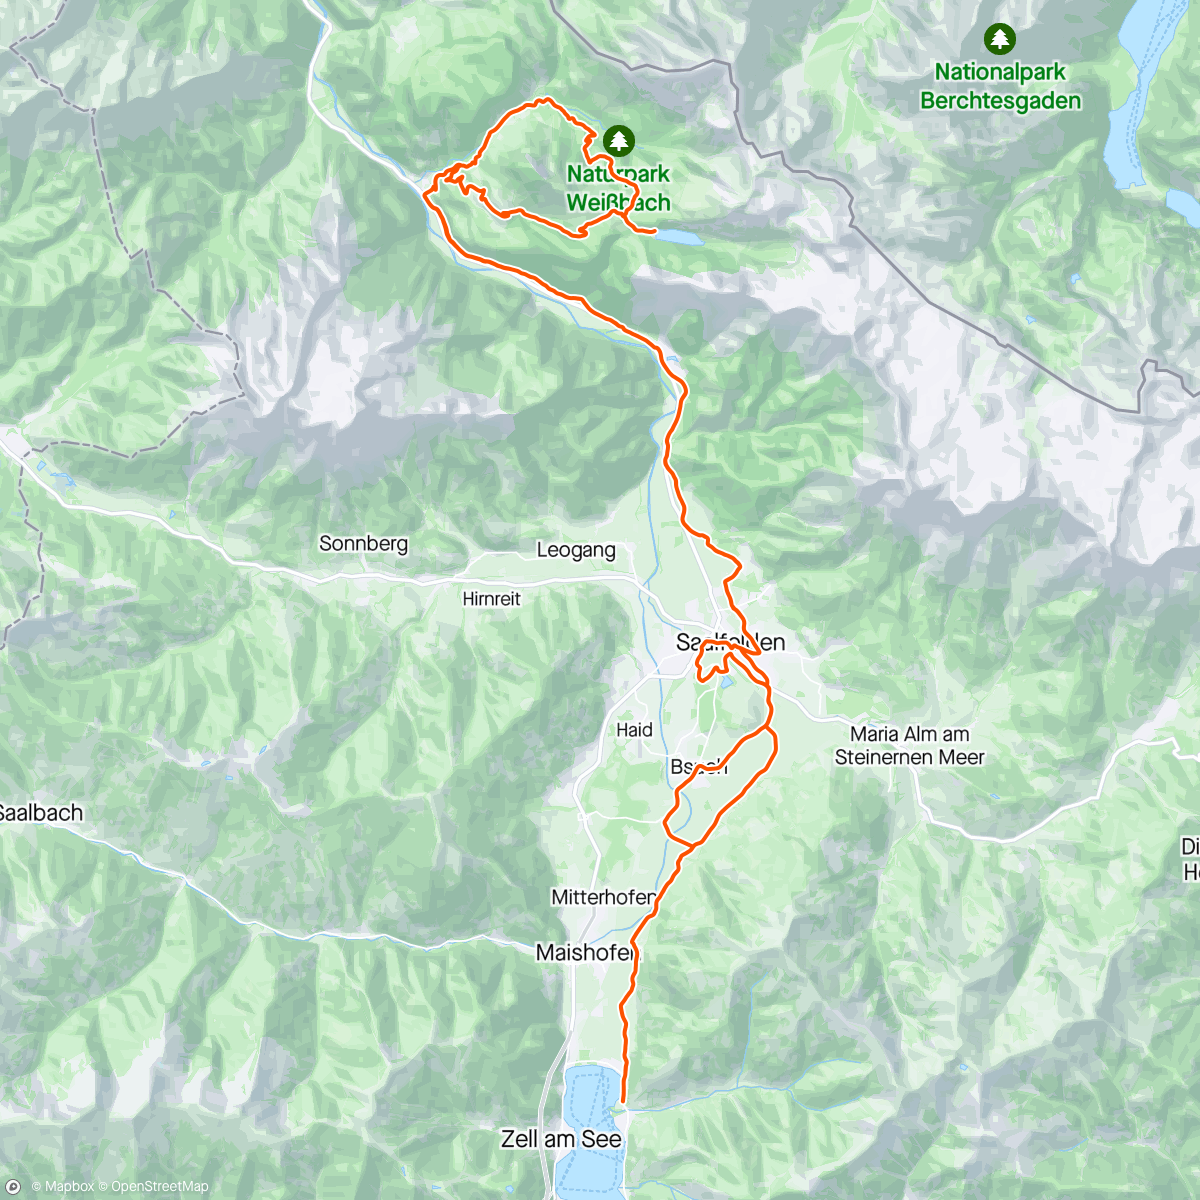 「MTB Diessbachseerunde」活動的地圖